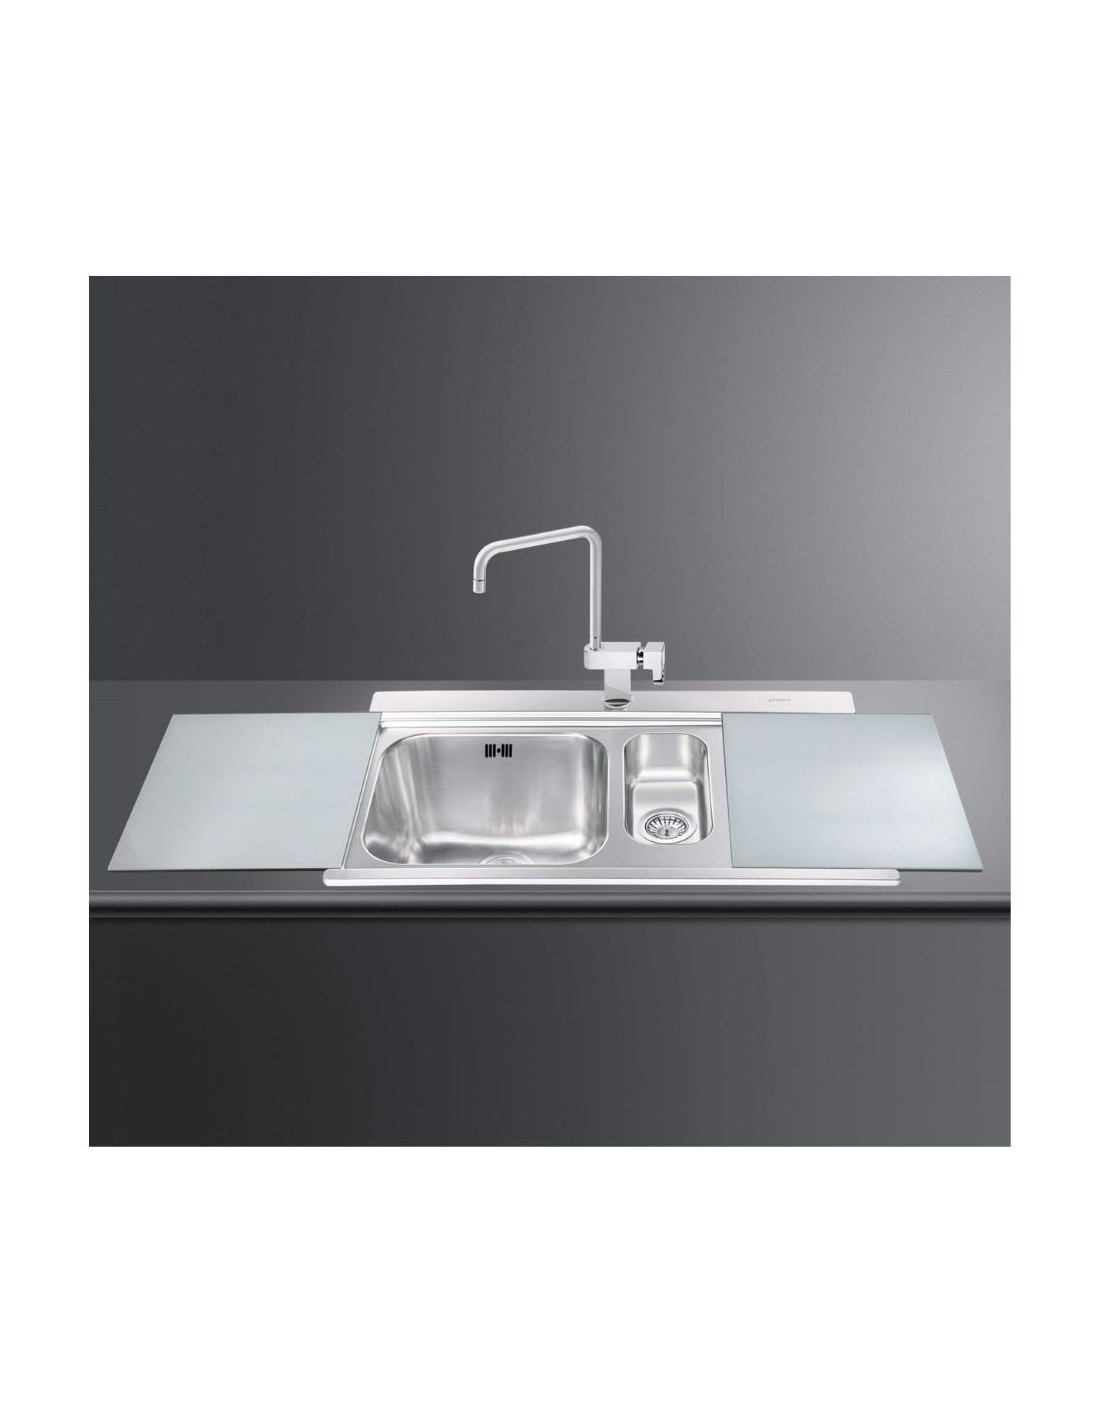 Lavello cucina 90x50 2 vasche e gocciolatoio destro taglieri in vetro SMEG LI915SGD